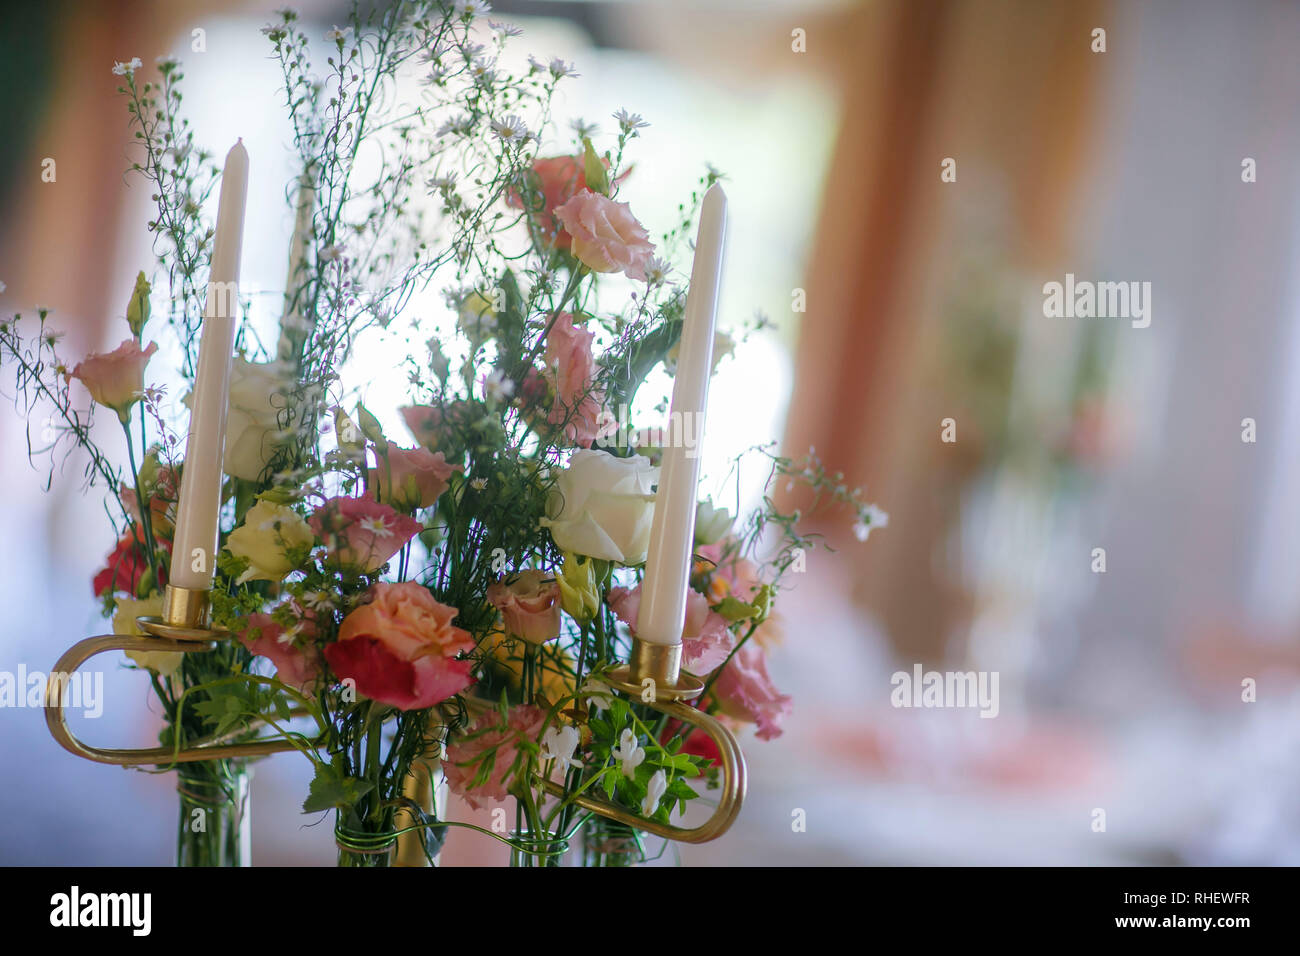 Beau mariage bouquet de fleurs orange. Pas de personnes. Photo couleur vertical. Banque D'Images